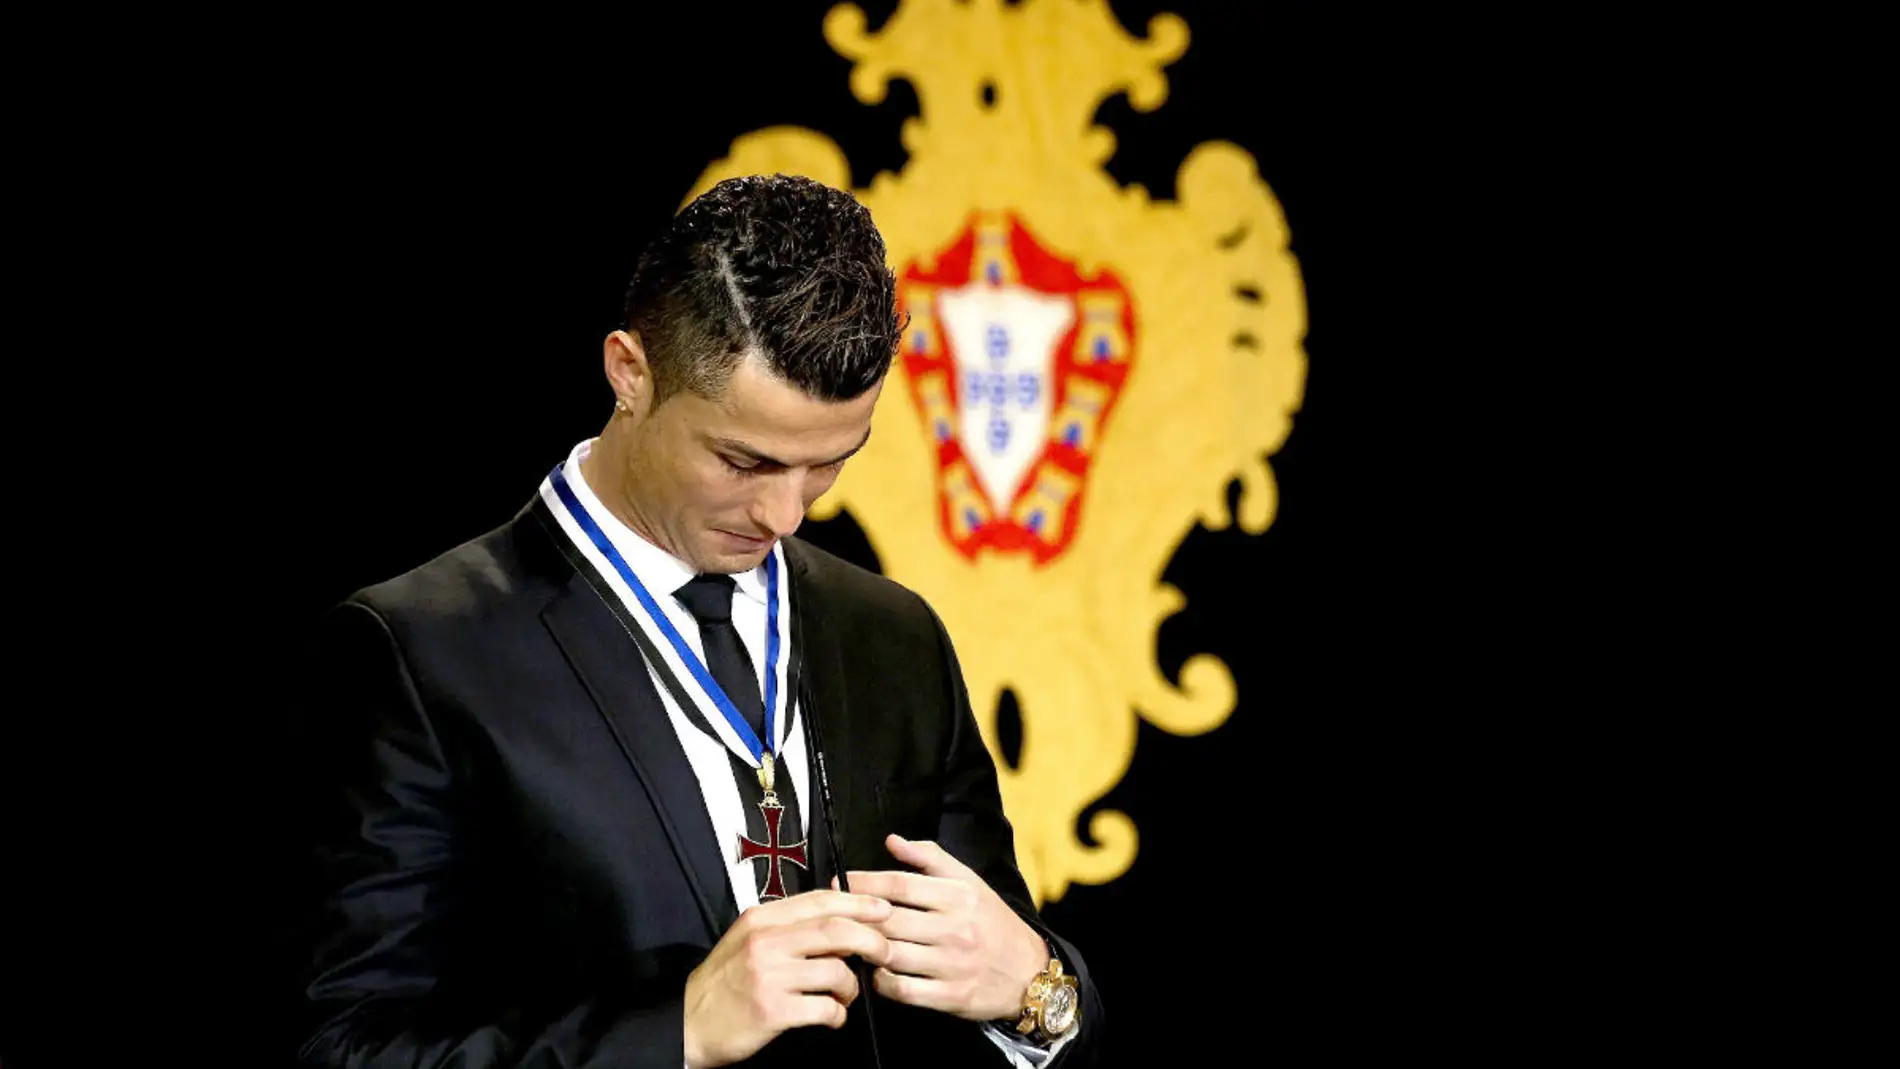  Cristiano Ronaldo tras ser nombrado Gran Oficial de la Orden del Infante D. Henrique